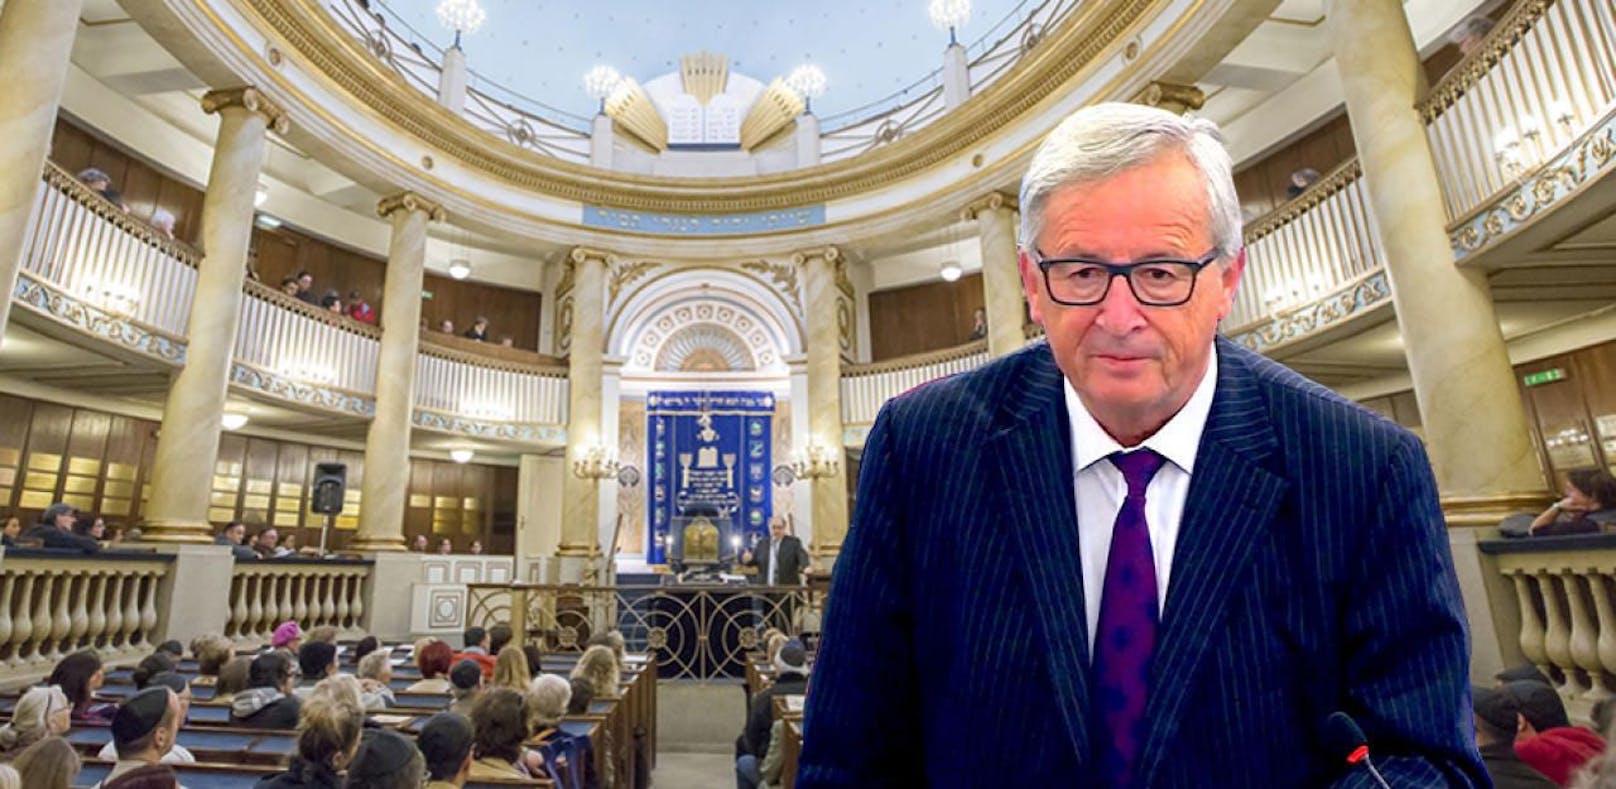 Jean-Claude Juncker besucht Synagoge in Wien